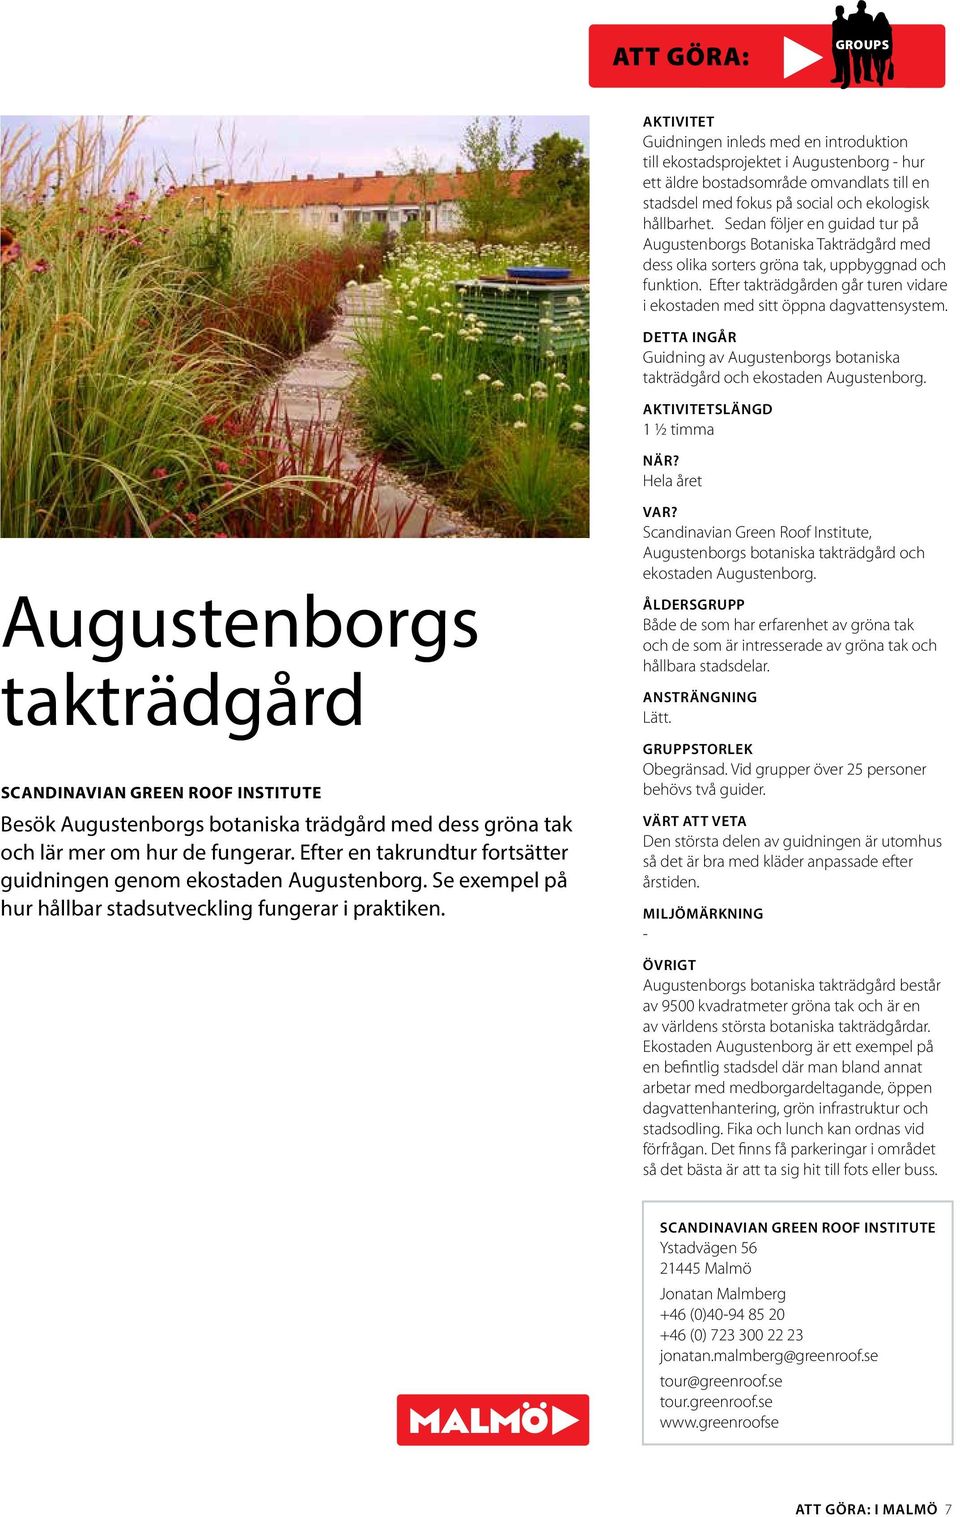 Efter takträdgården går turen vidare i ekostaden med sitt öppna dagvattensystem. DETTA INGÅR Guidning av Augustenborgs botaniska takträdgård och ekostaden Augustenborg.